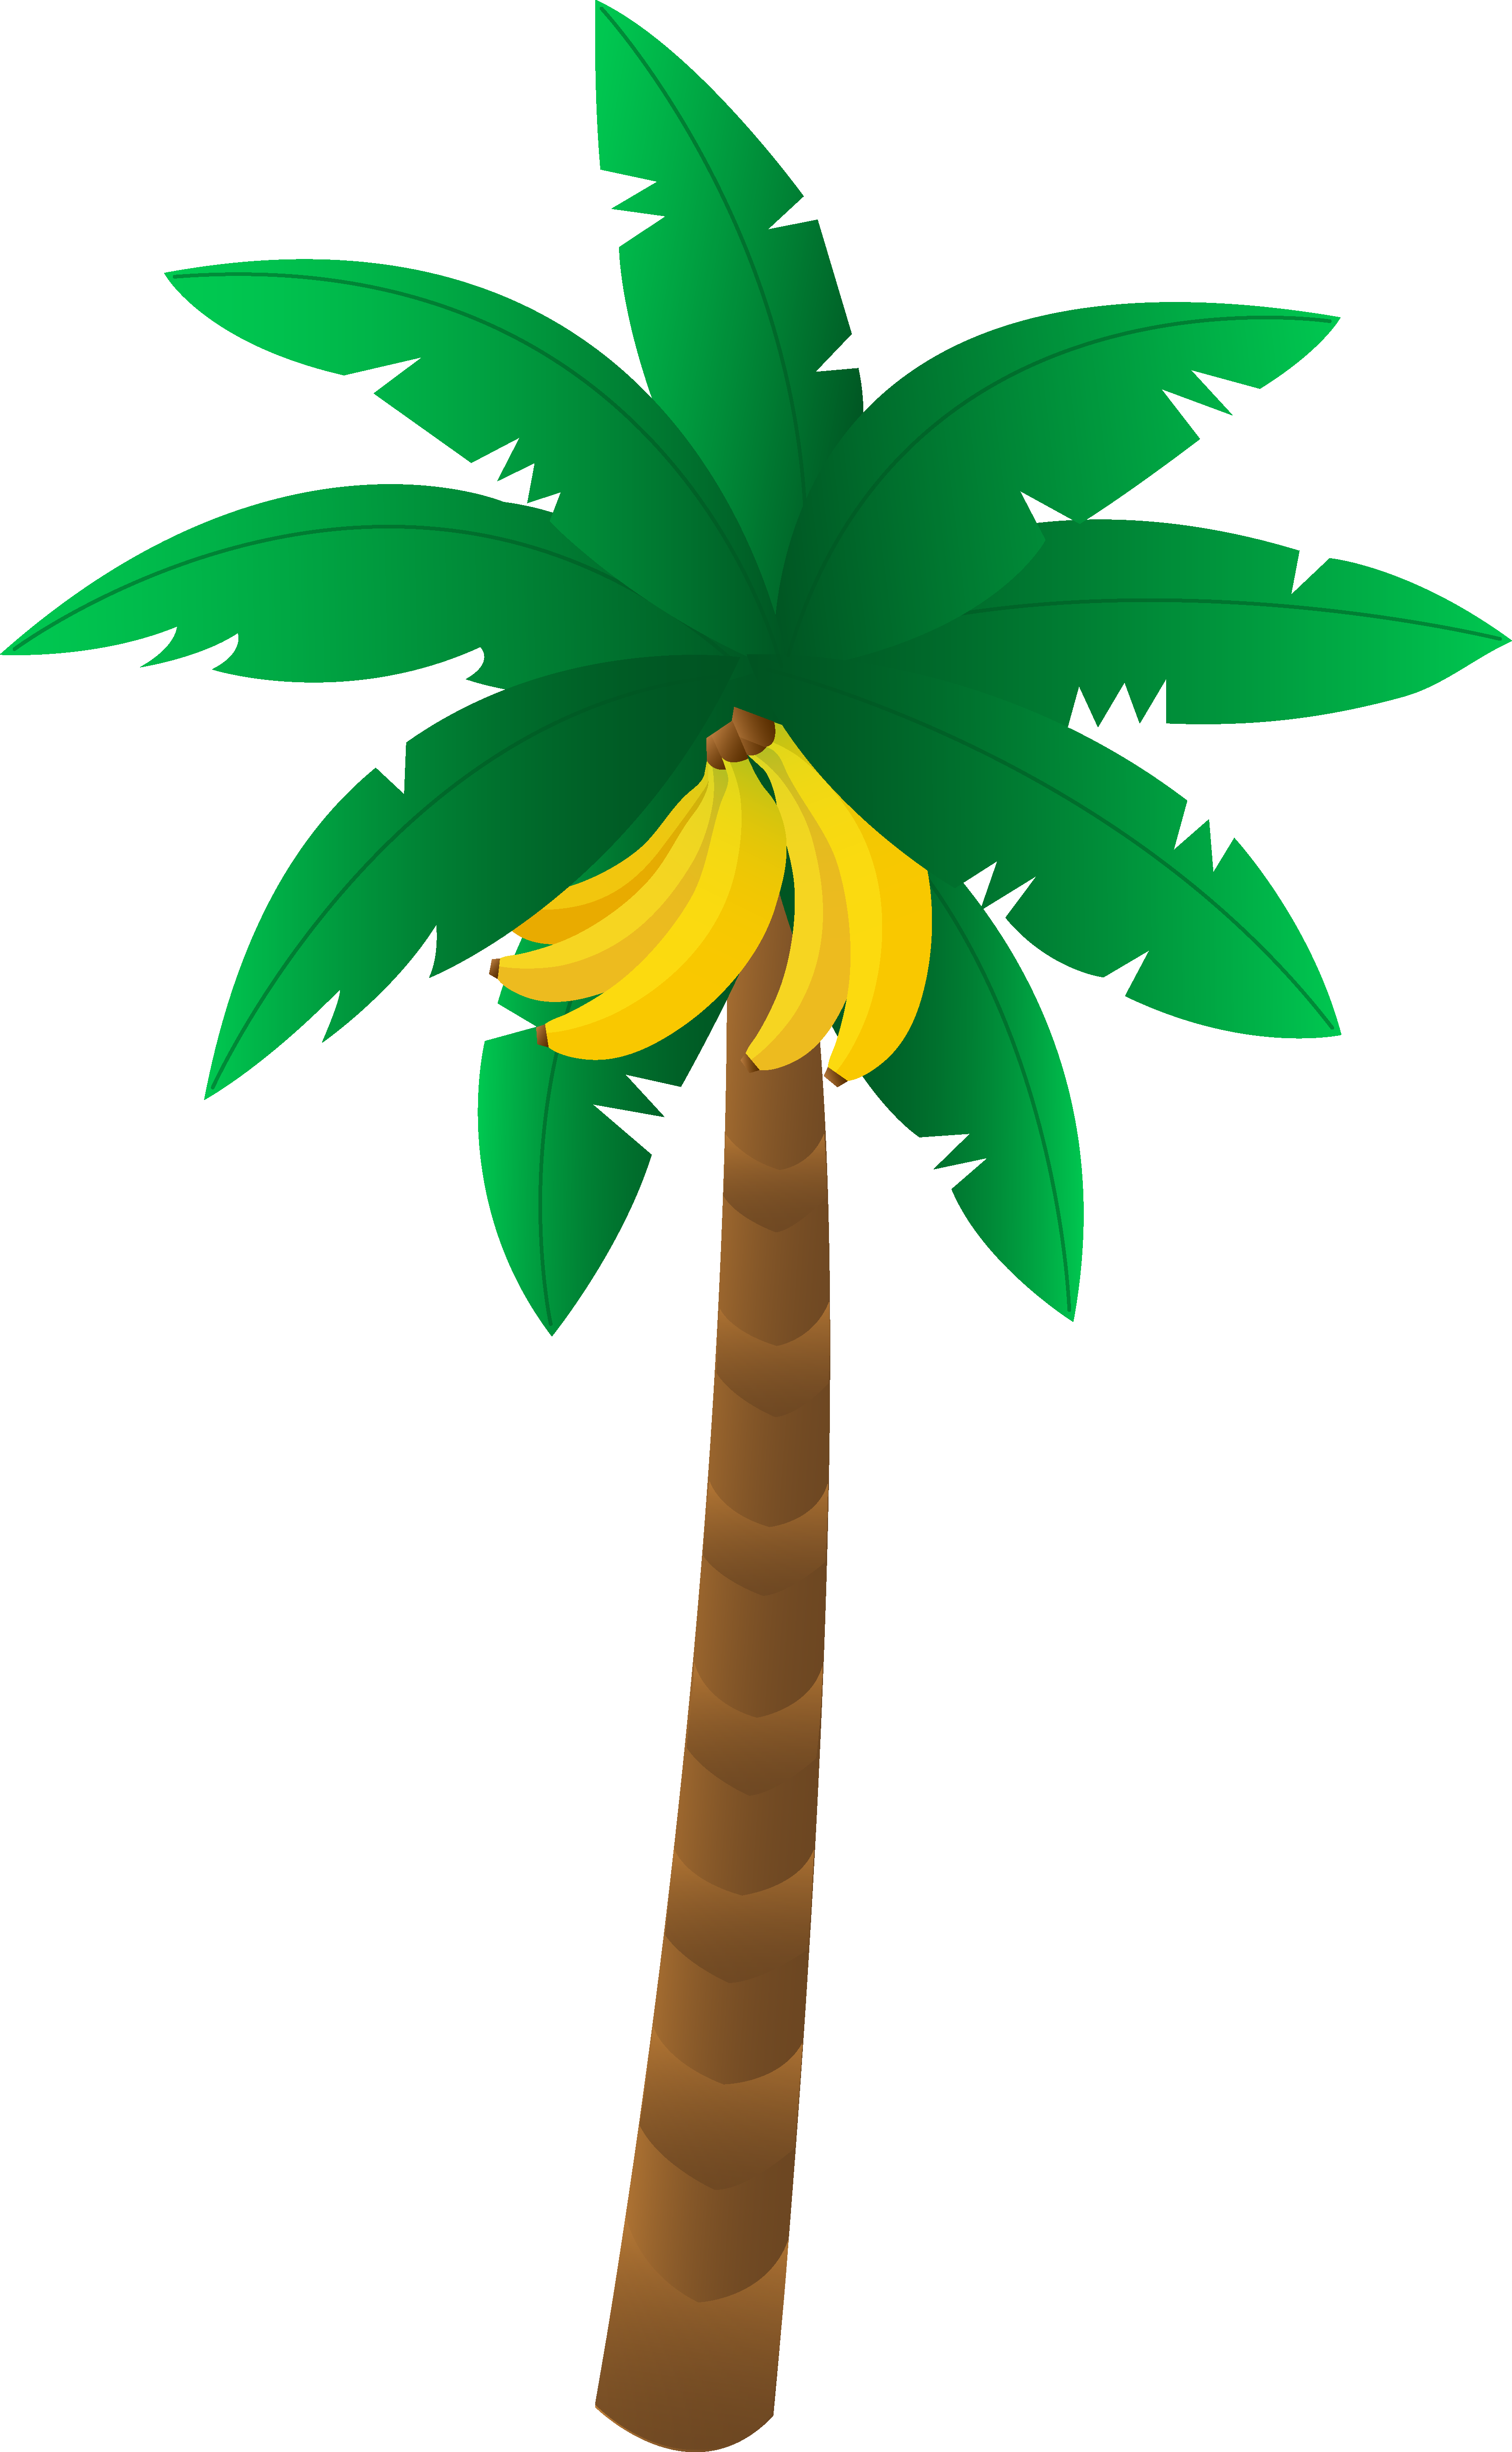 Banana tree free . Bananas clipart bananan